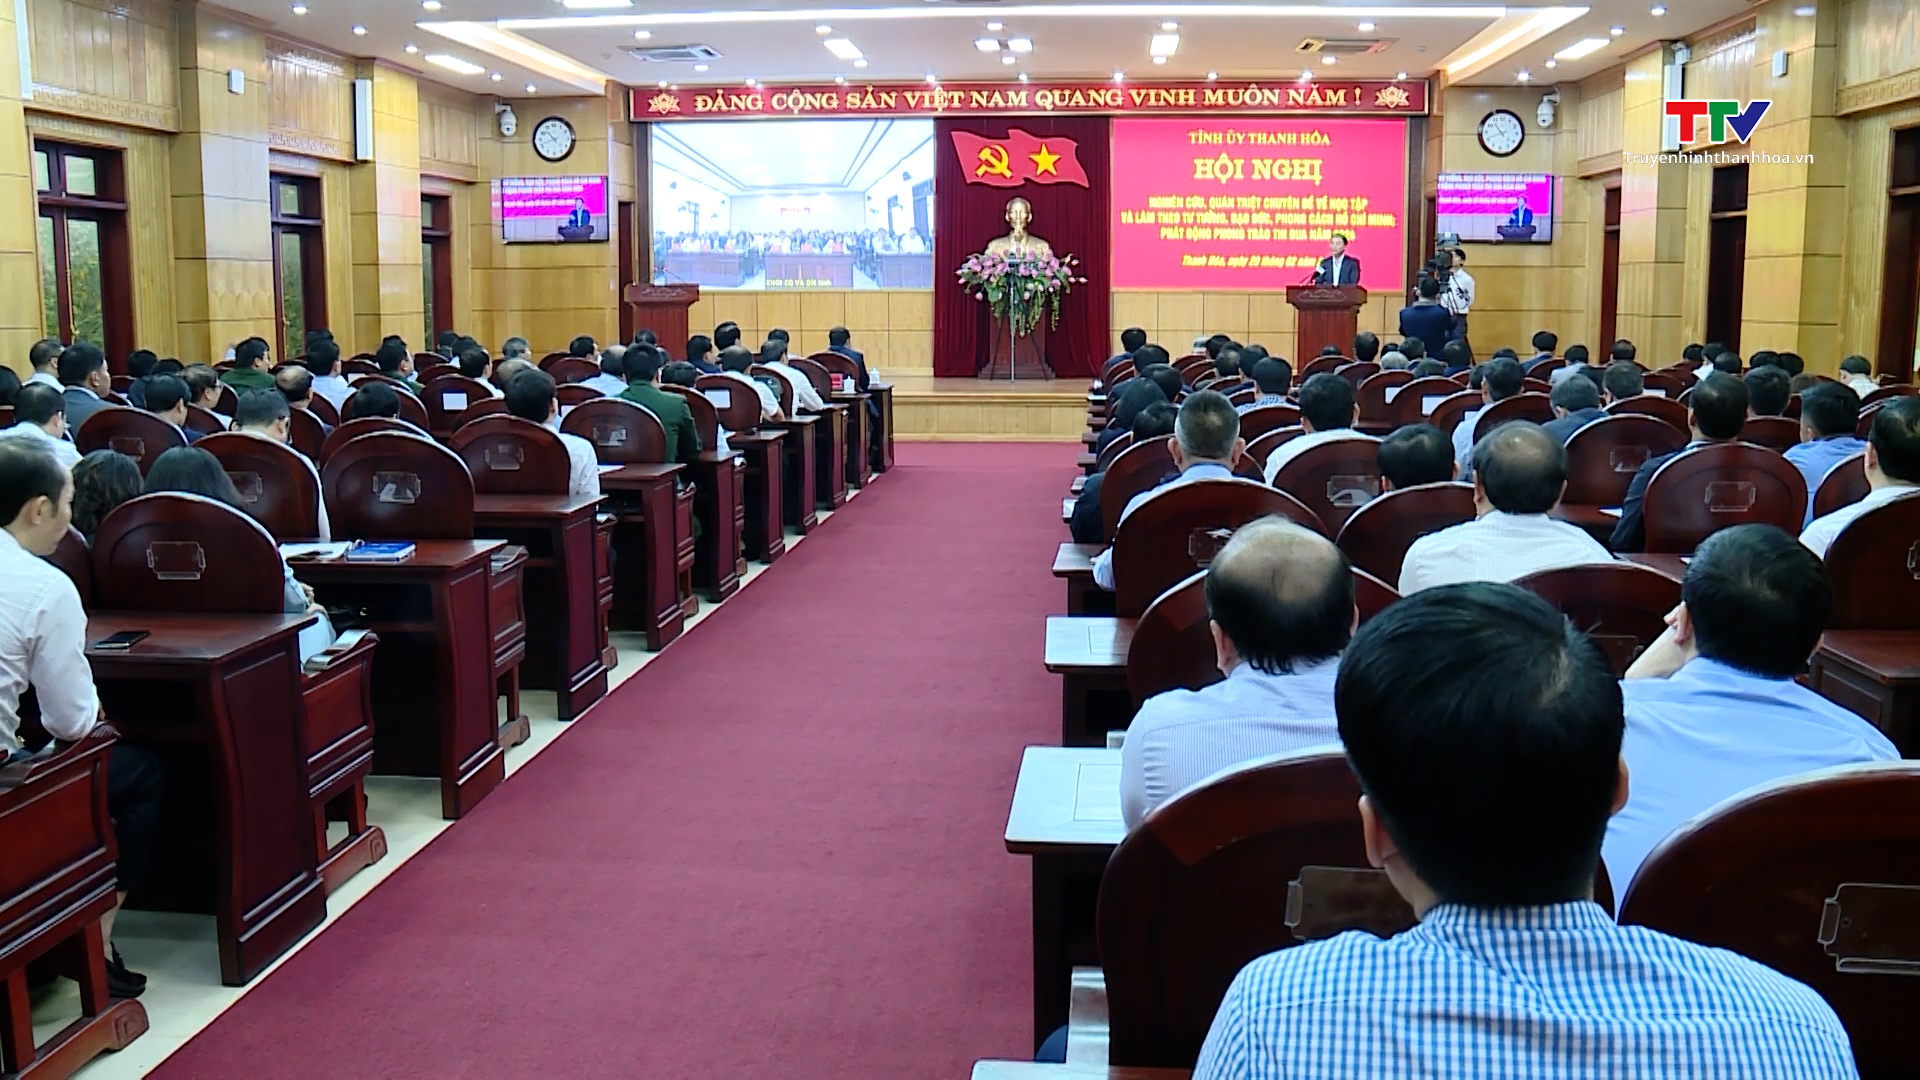 Hội nghị học tập và làm theo tư tưởng, đạo đức, phong cách Hồ Chí Minh- Ảnh 5.